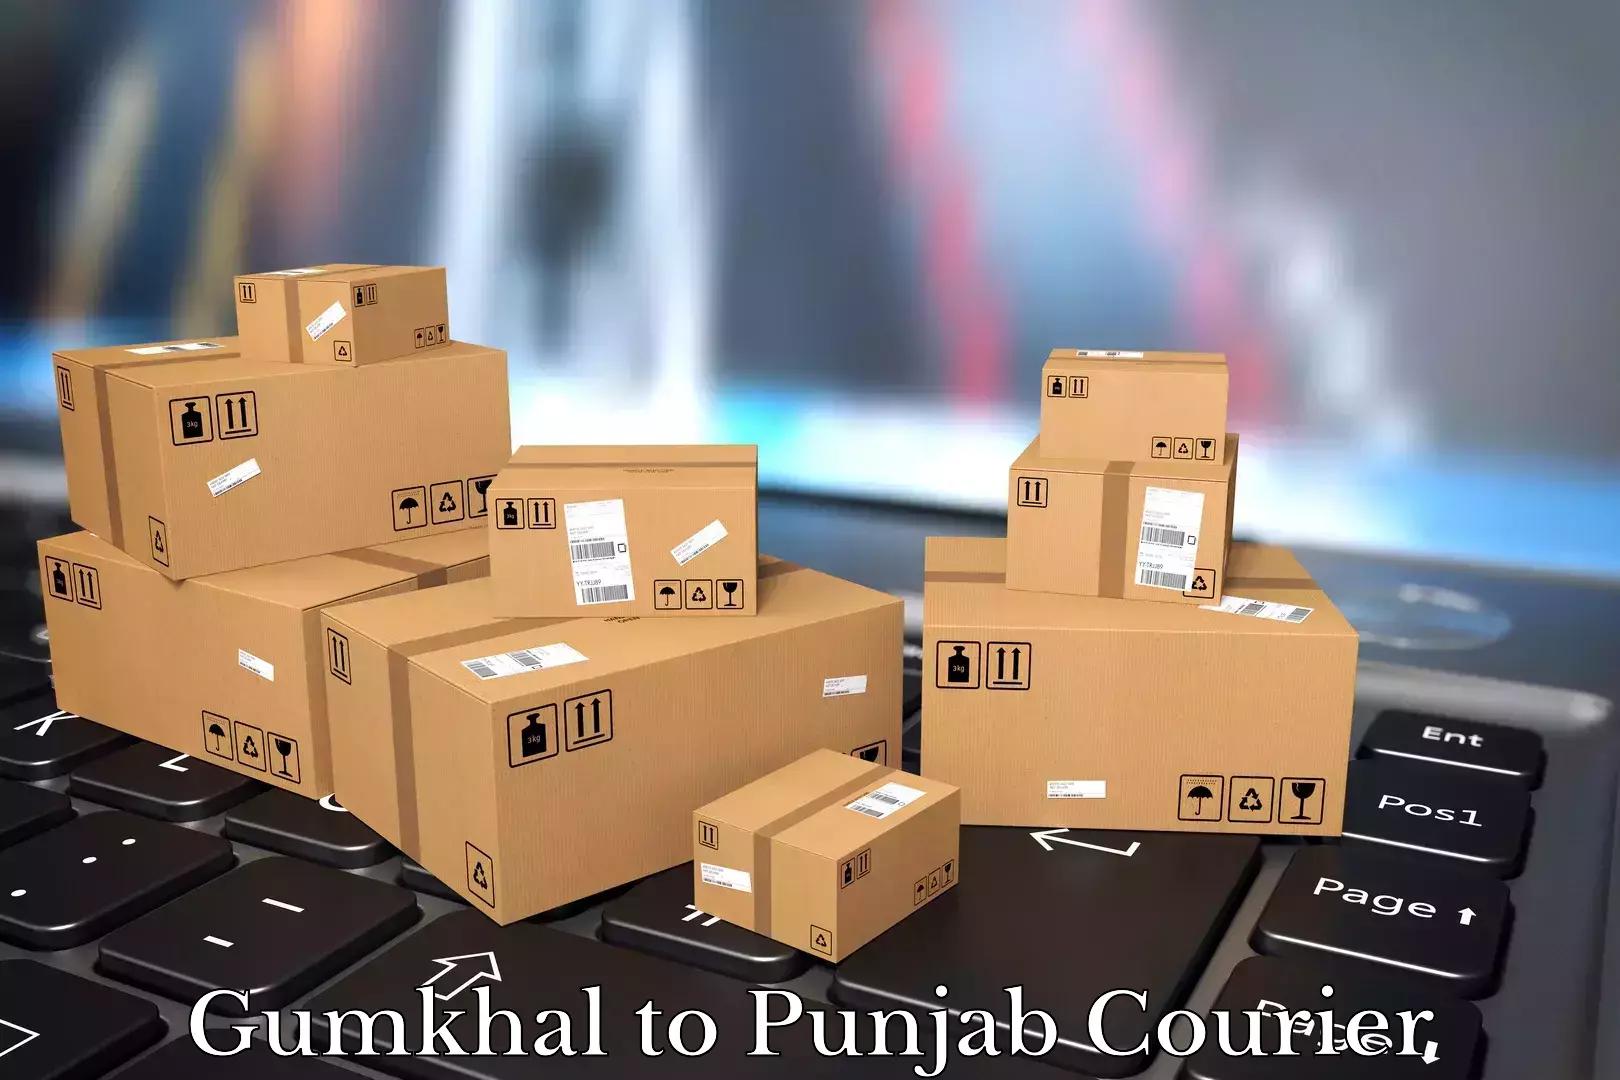 Furniture transport and storage Gumkhal to Punjab